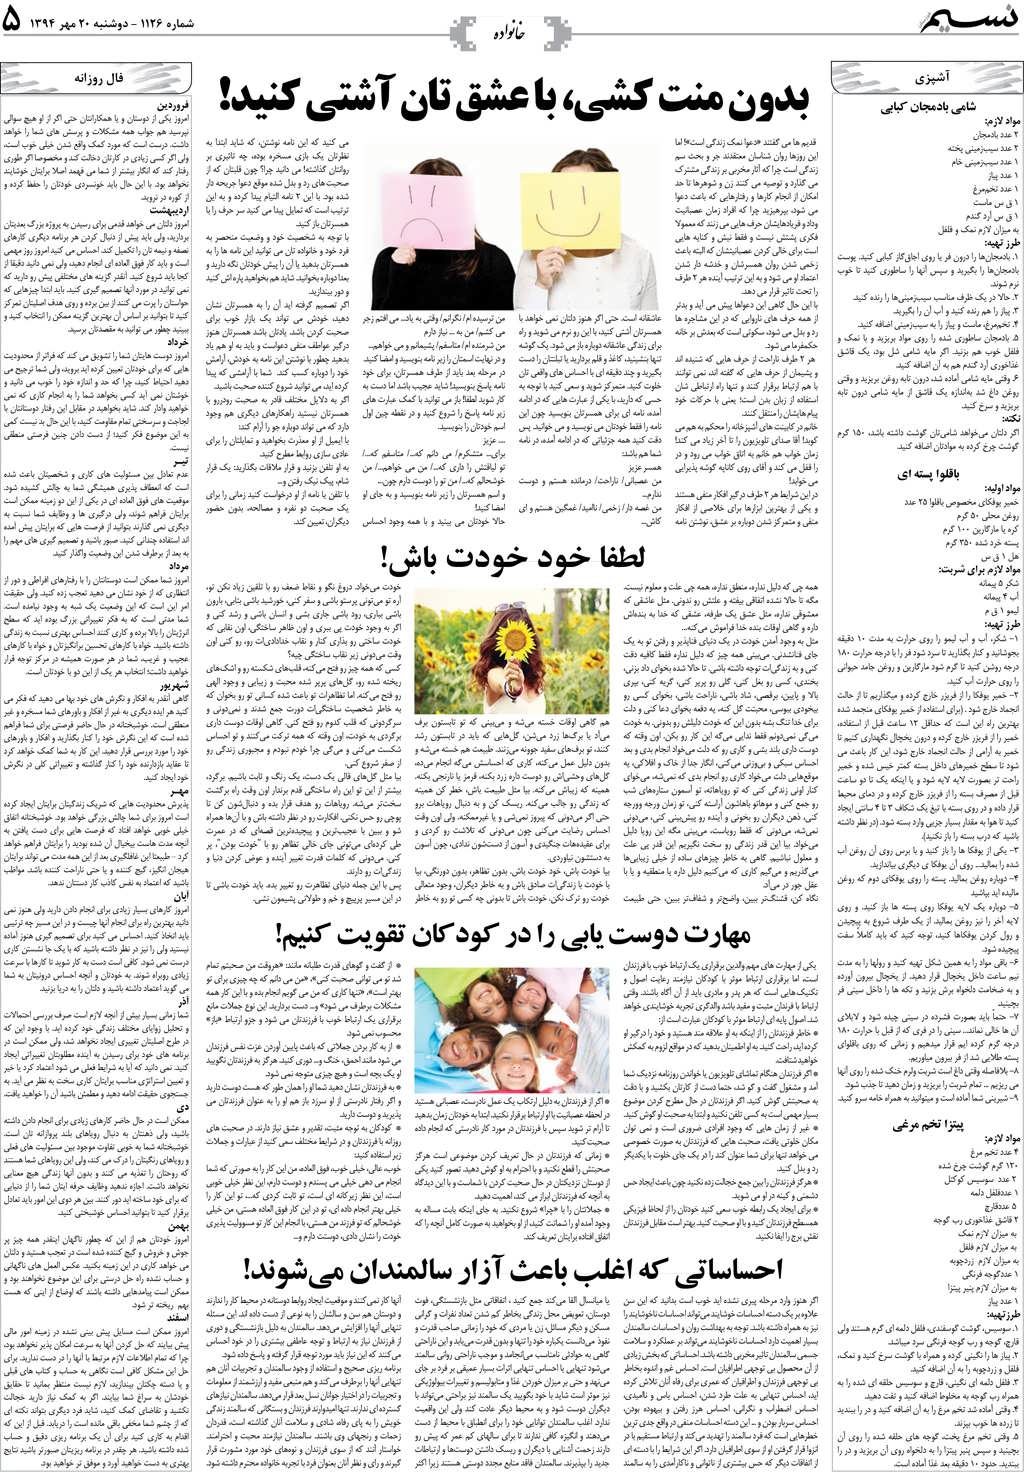 صفحه خانواده روزنامه نسیم شماره 1126